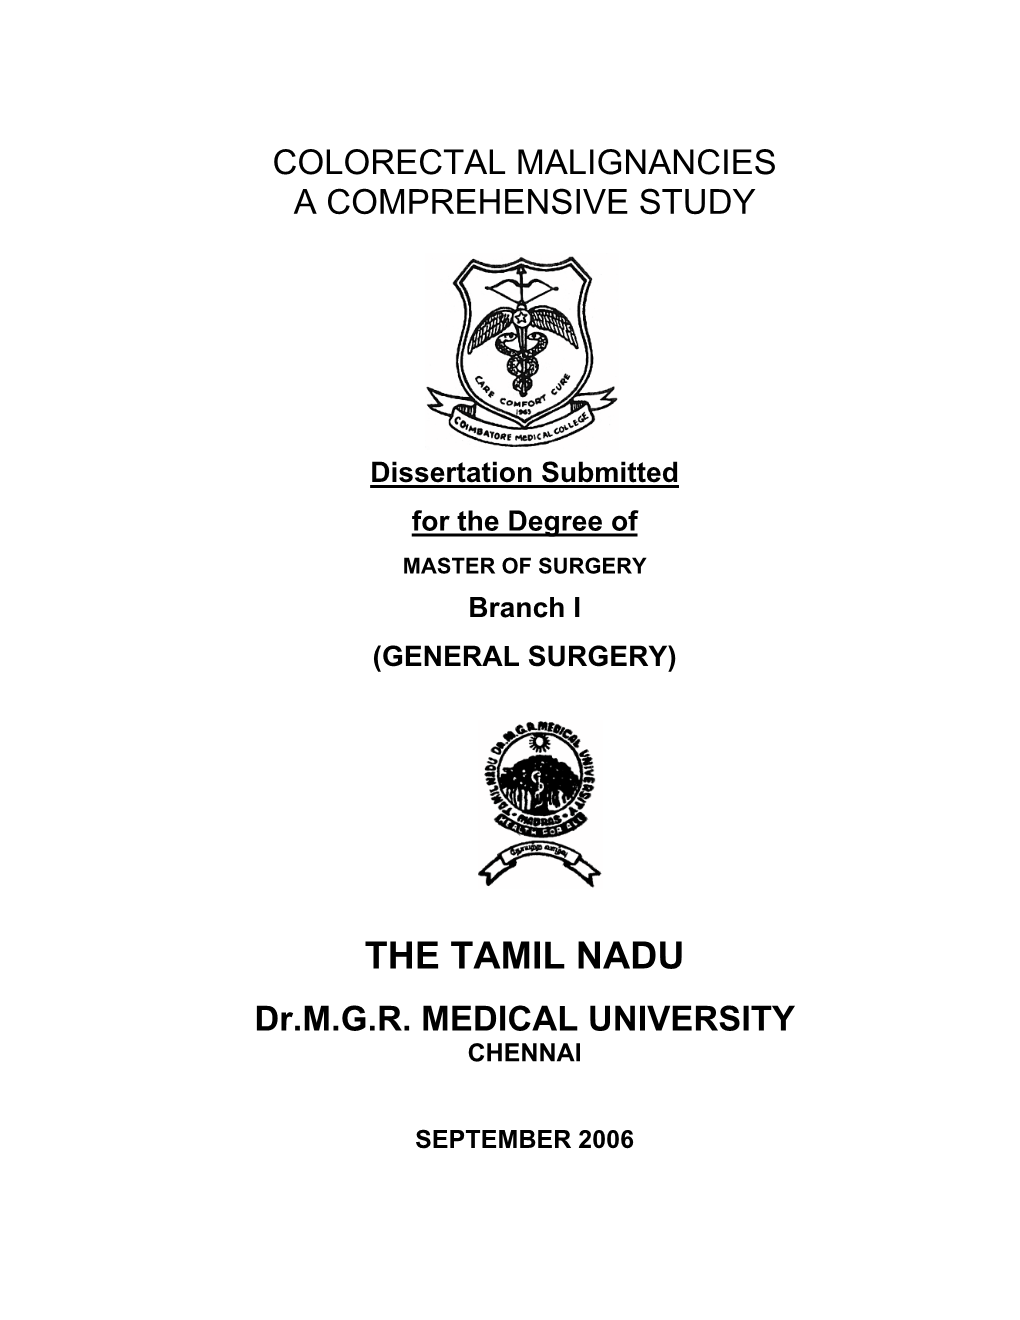 The Tamil Nadu